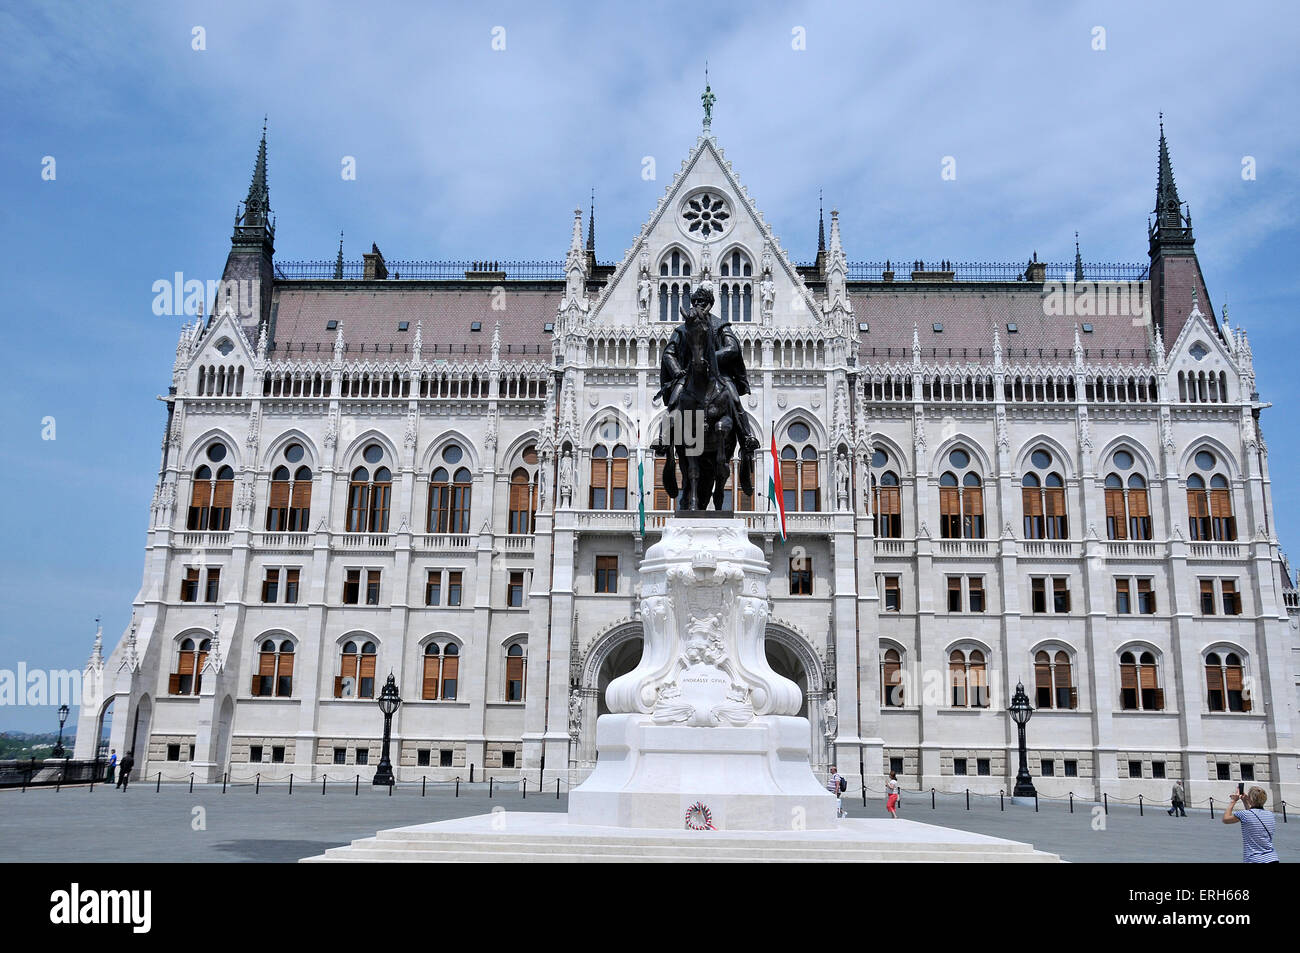 Statua equestre di Andrassy Gyula davanti all'edificio del Parlamento, Budapest, Ungheria Foto Stock